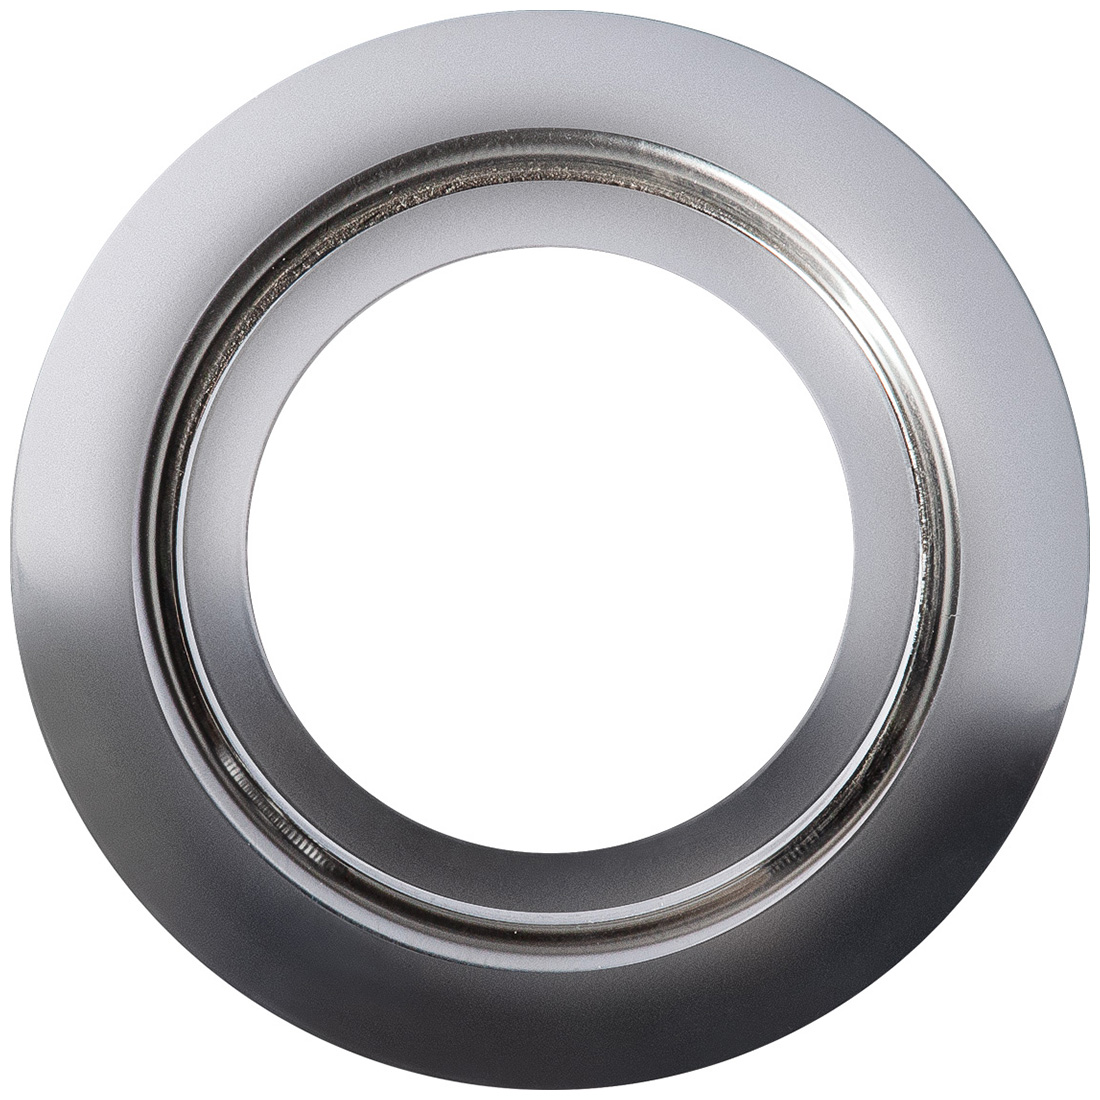 Кольцо переходник для измельчителя Bort Ring 160, 93412642 кольцо переходник для измельчителя bort ring 160 93412642